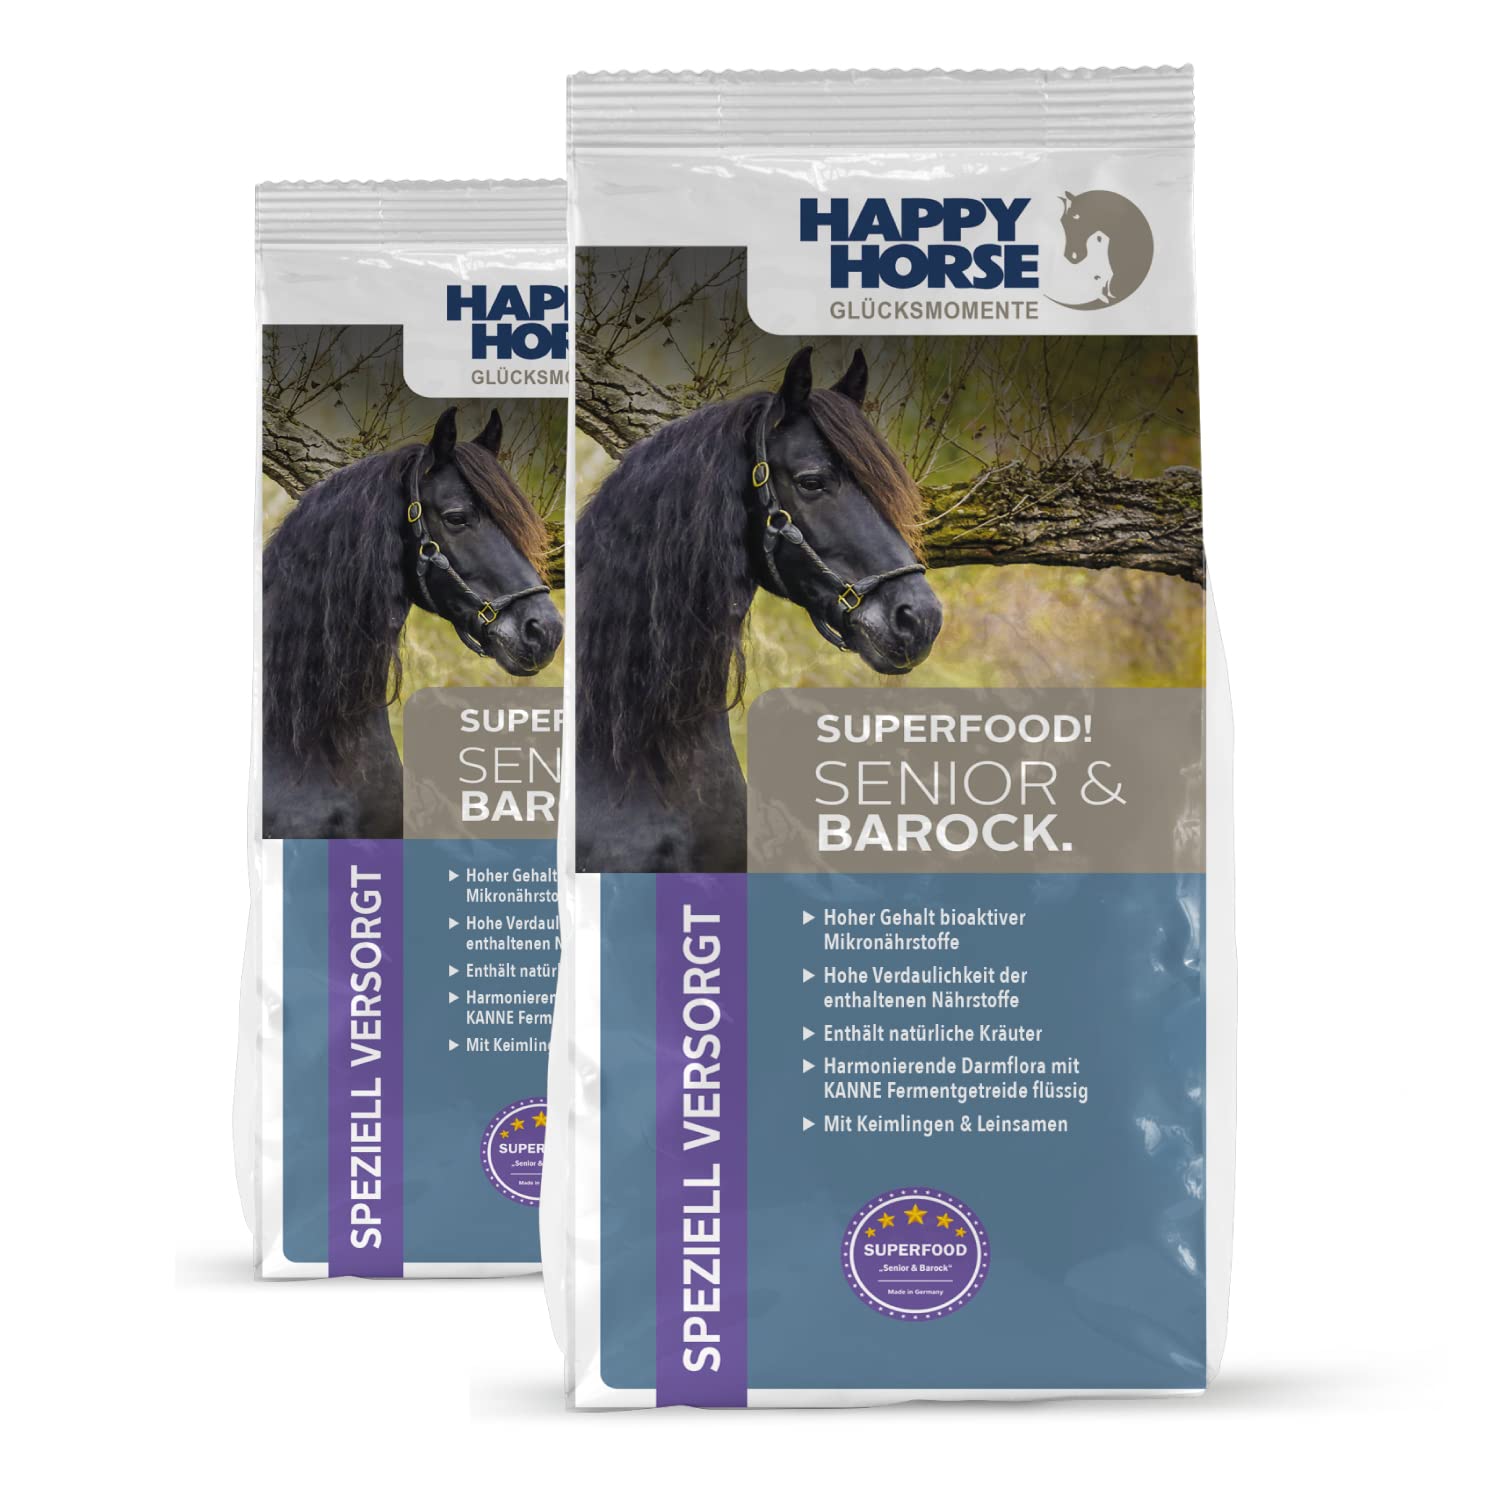 HAPPY HORSE Superfood Senior & Barock Pferdefutter 2 x 14kg| ausgewogenen Inhaltsstoffe | natürlichen Kräuter | Leinsamen | bioaktive Mikronährstoffe |